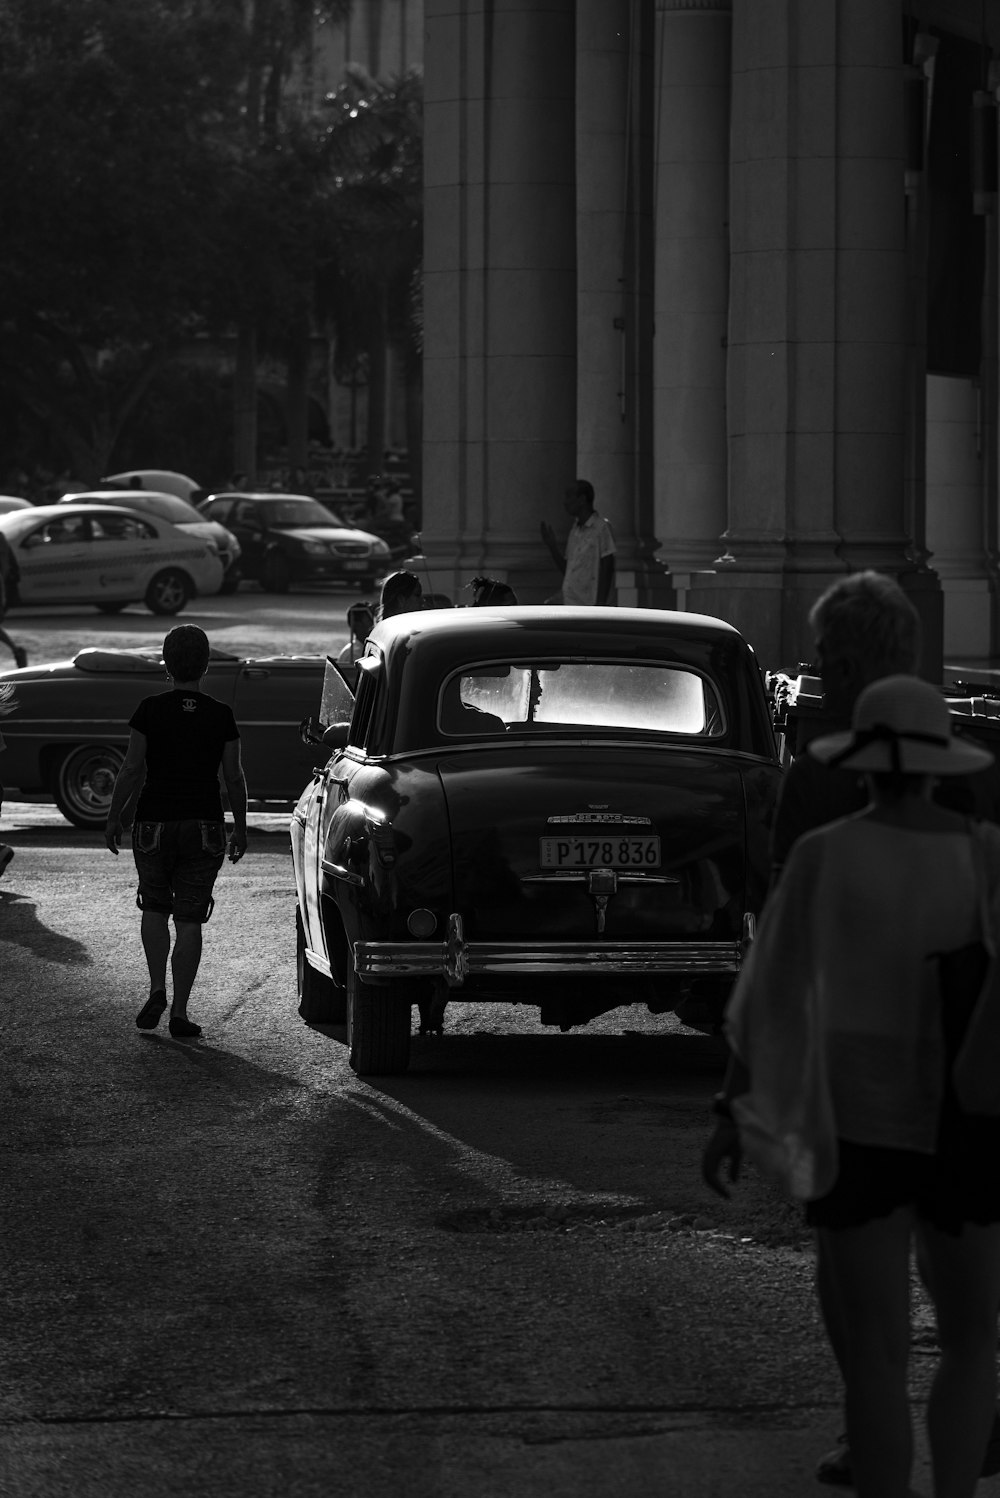 foto in scala di grigi di veicoli e persone sulla strada